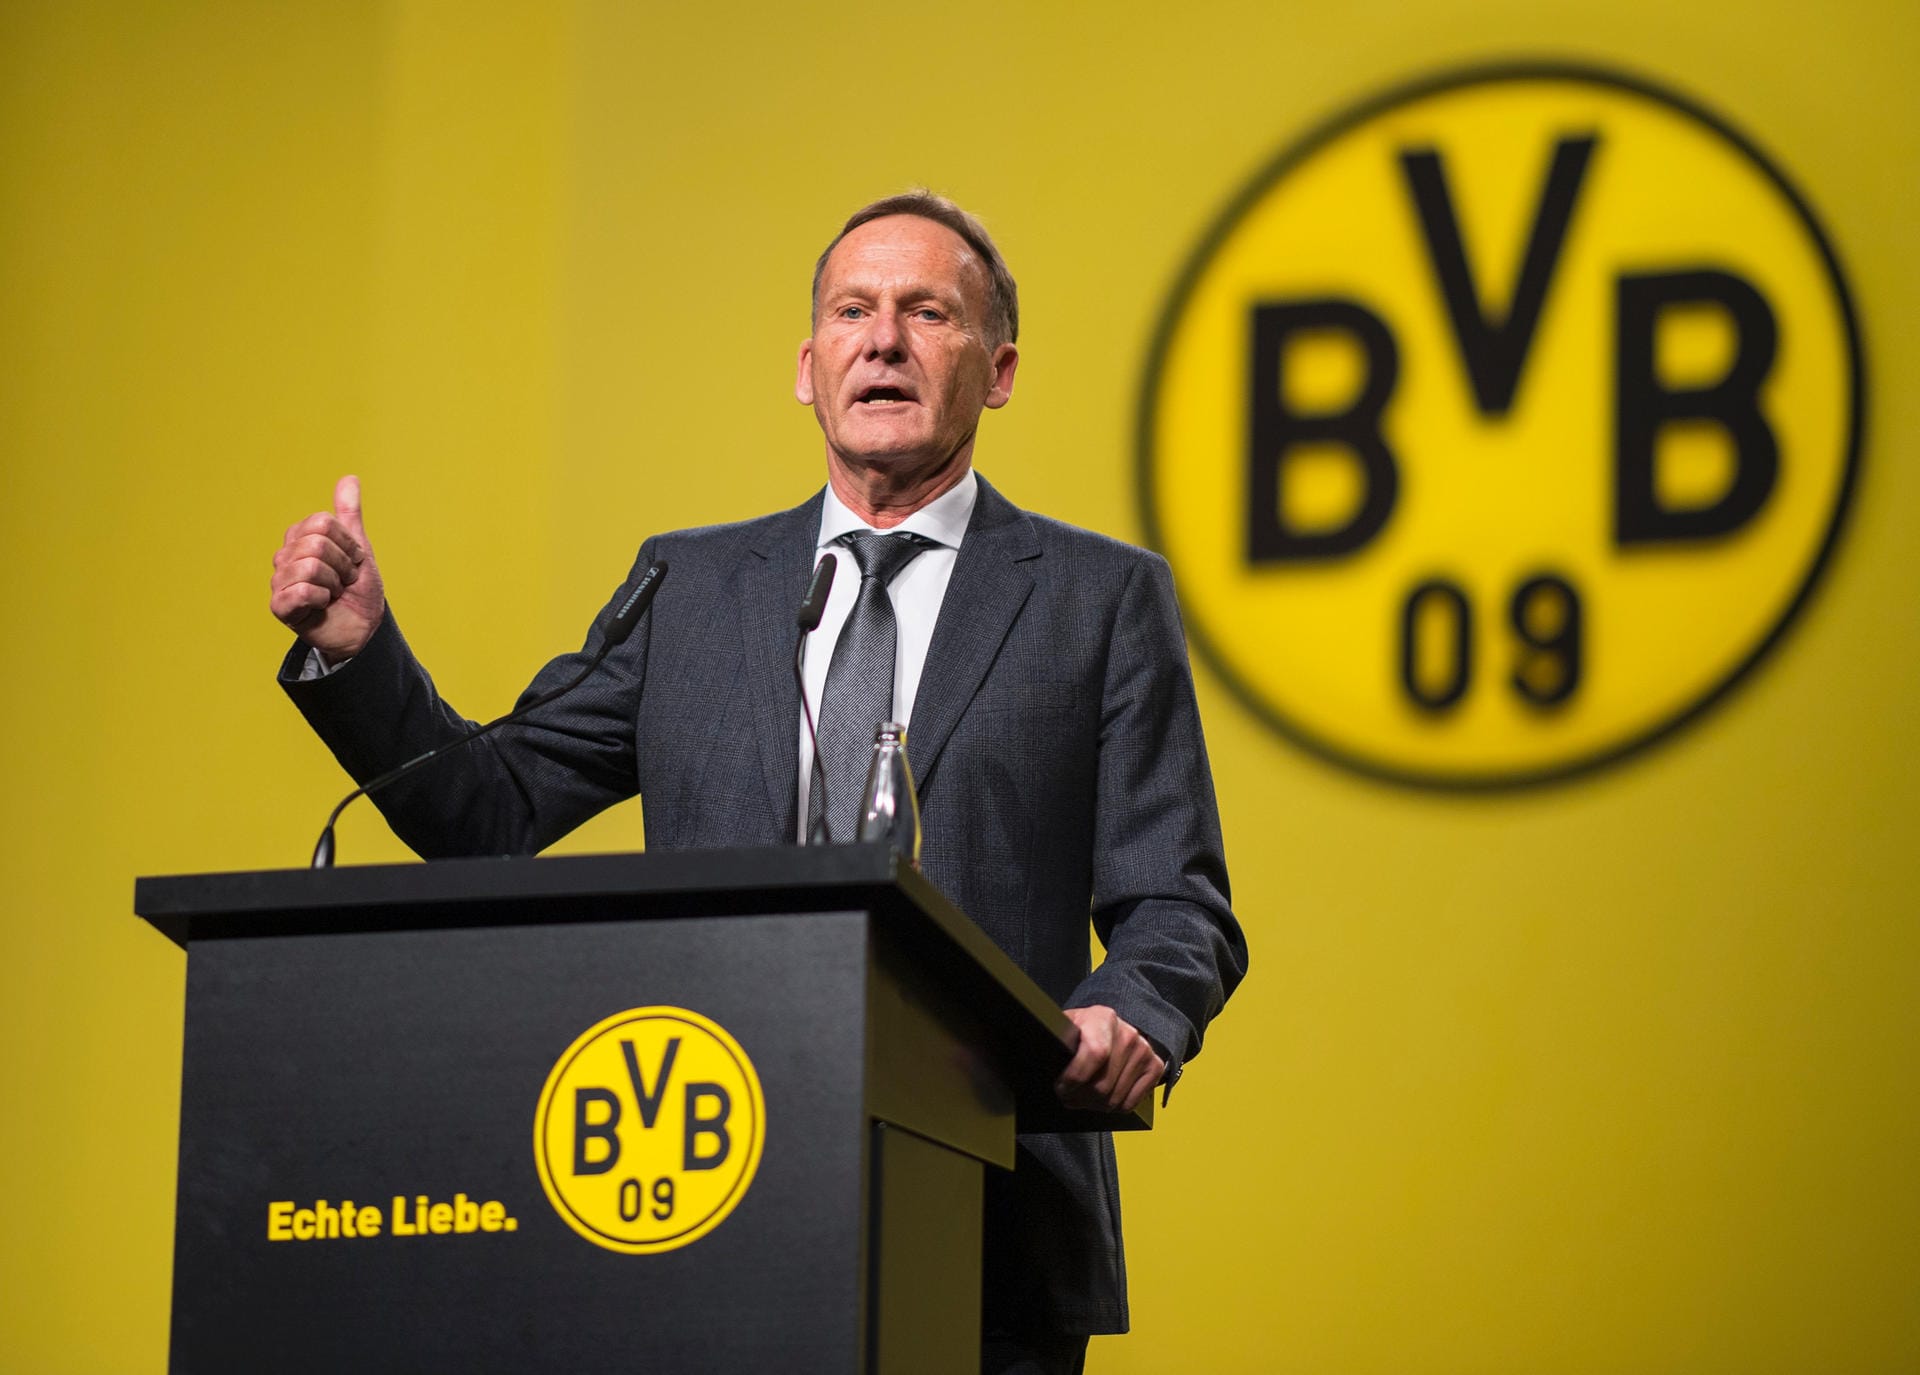 Namen nannte Hans-Joachim Watzke auf der Mitgliederversammlung am Sonntag und bei der Aktionärsversammlung am Montag keine. Doch der BVB-Boss kritisierte die Profis seines Vereins. Aber welche Probleme gibt es im Kader?